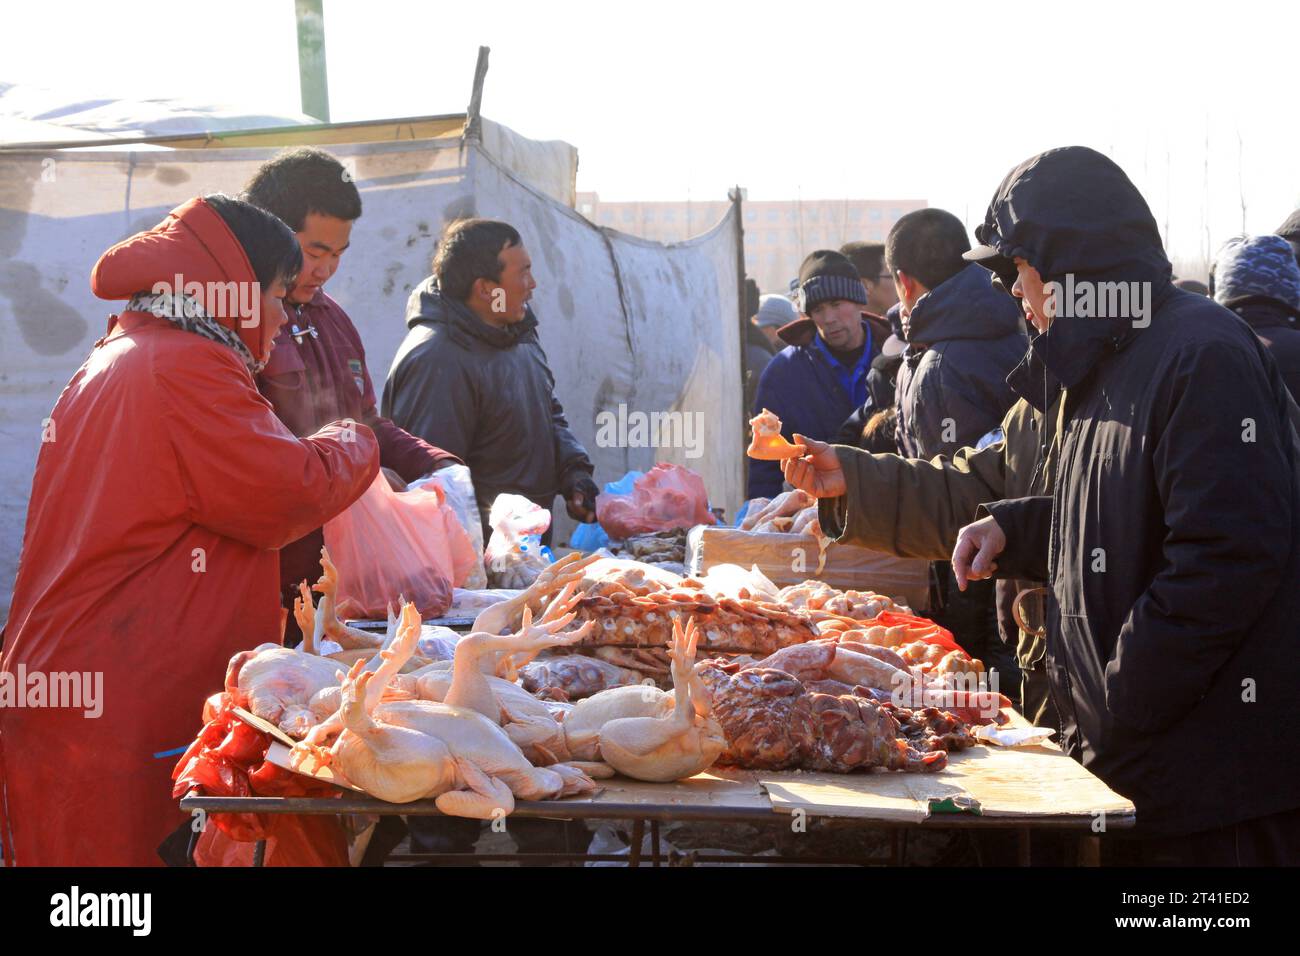 LUANNAN COUNTY - 28. JANUAR: Der Kunde und Verkäufer, der am 28. januar 2014 vor einem Fleischstand verhandelt wurde, Luannan County, Provinz Hebei, China. Stockfoto